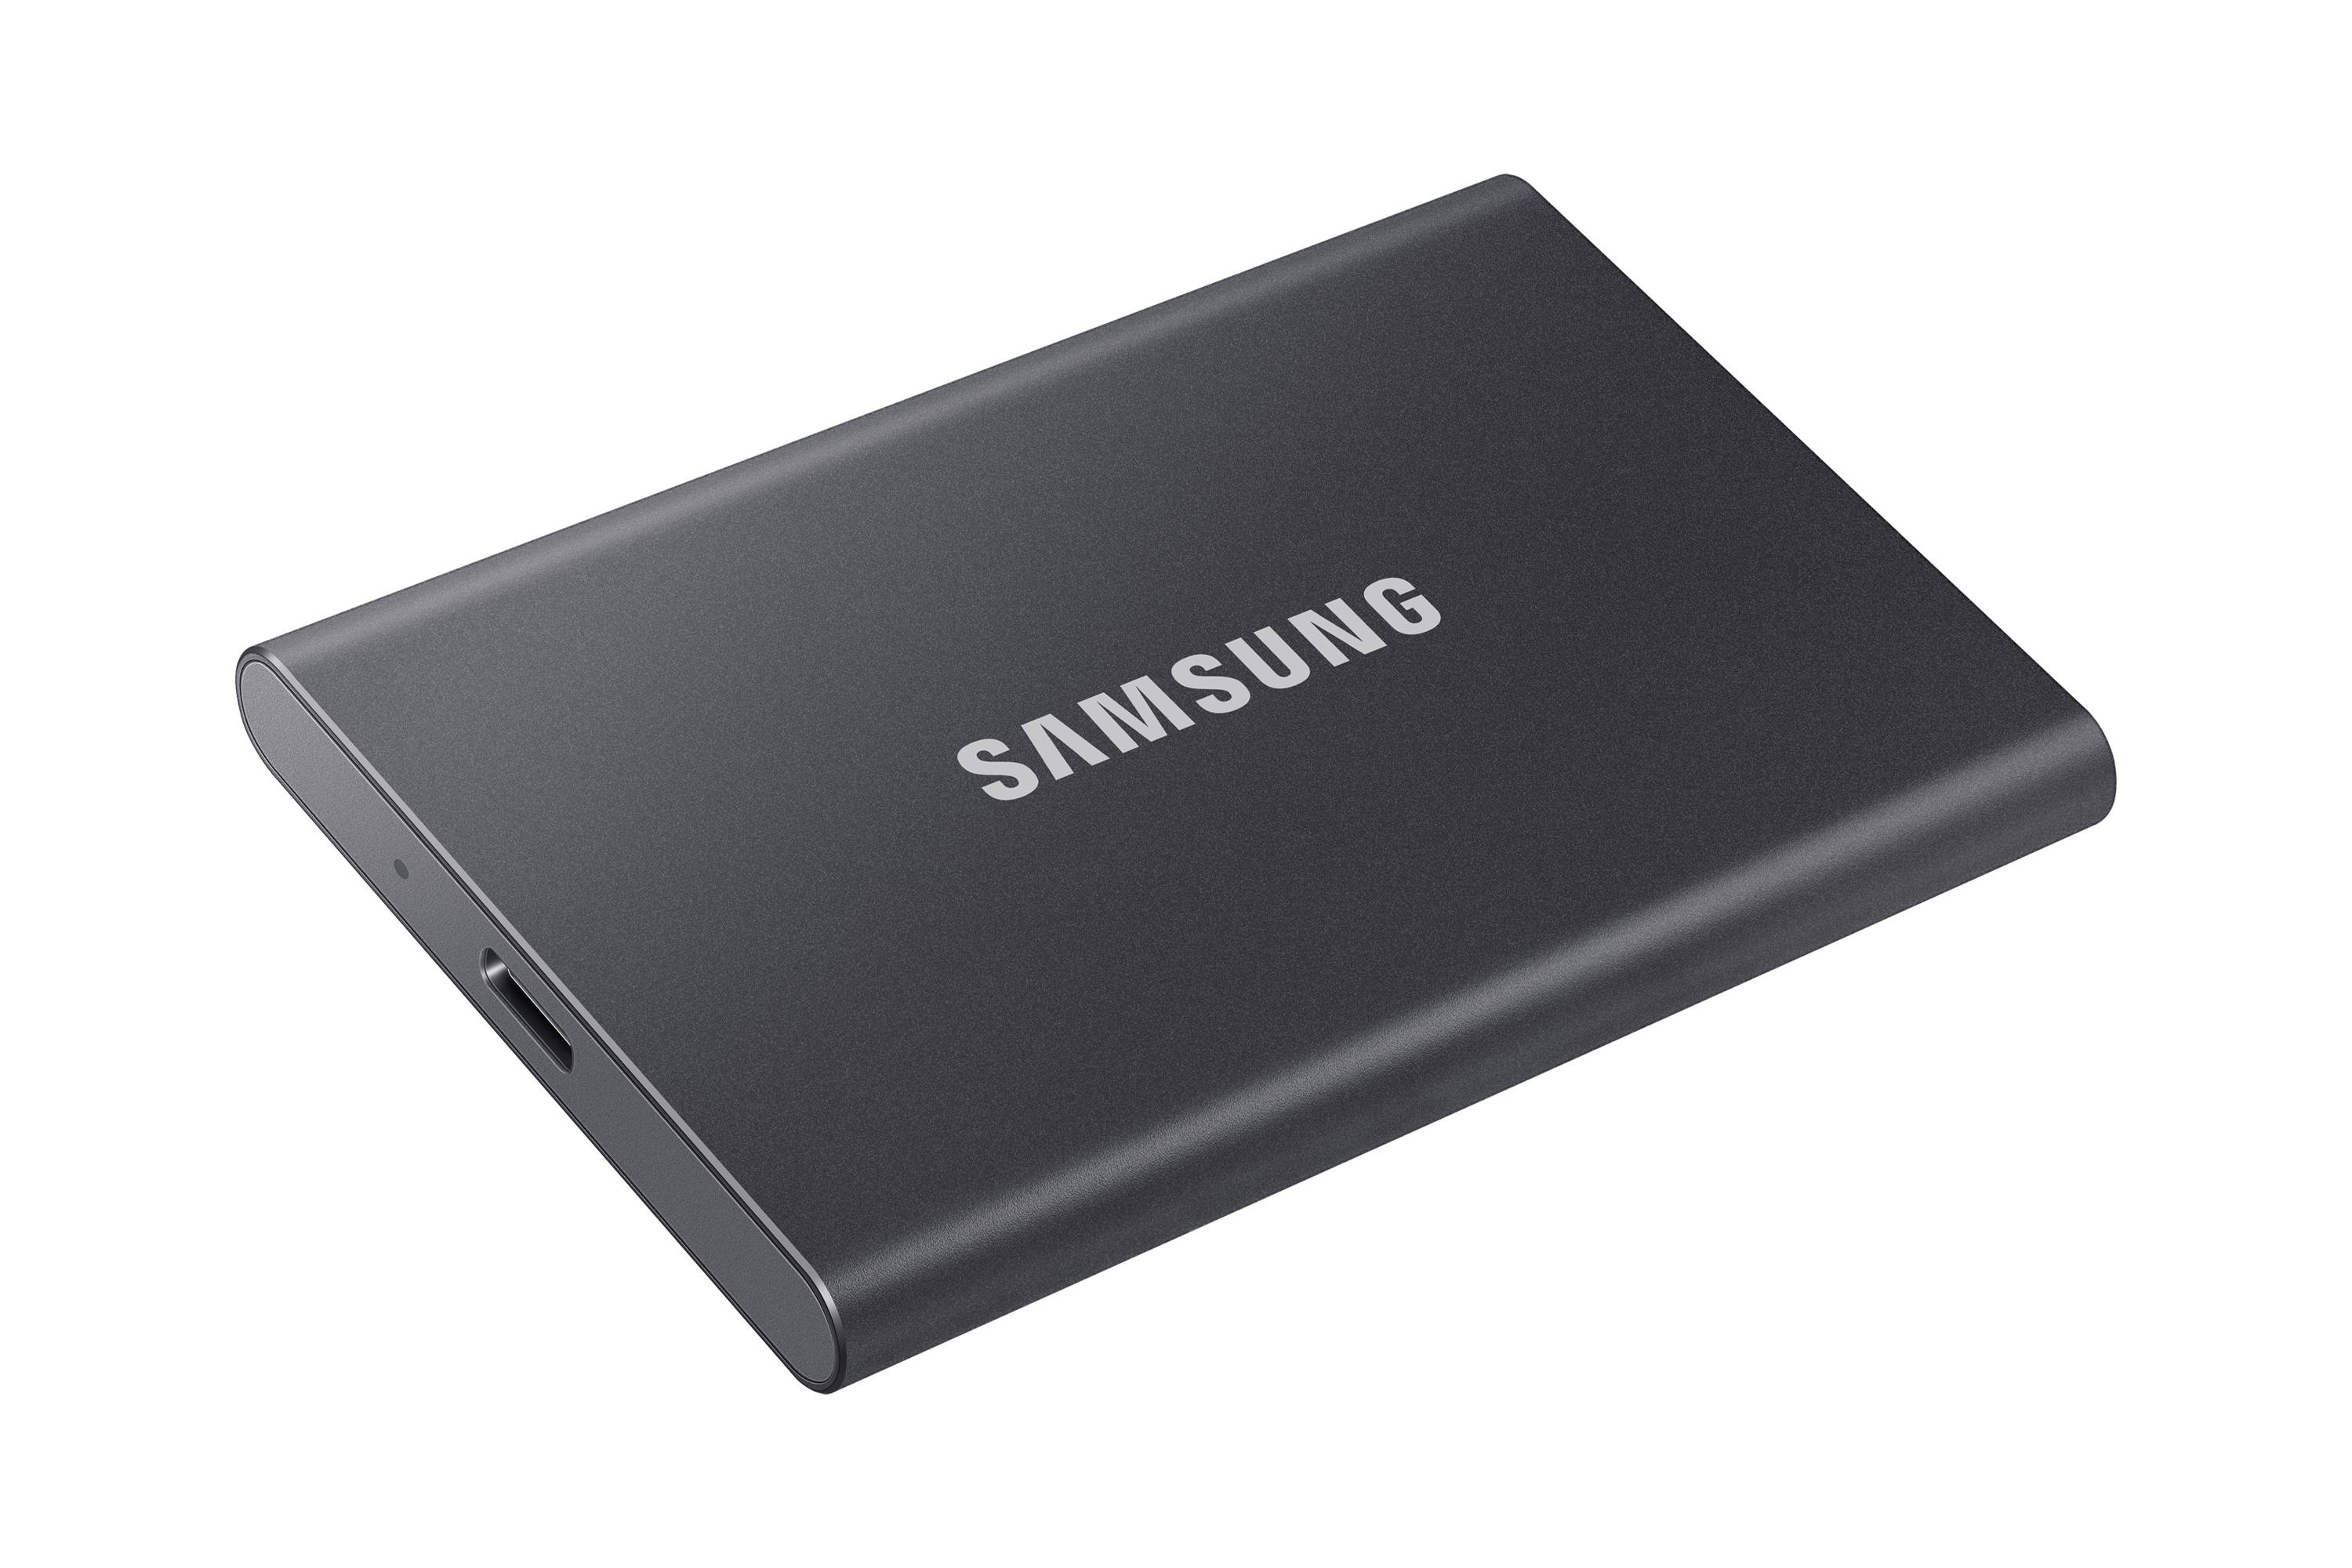 Rca Informatique - image du produit : SSD PORTABLE T7 500GB USB 3.2 TITAN GREY